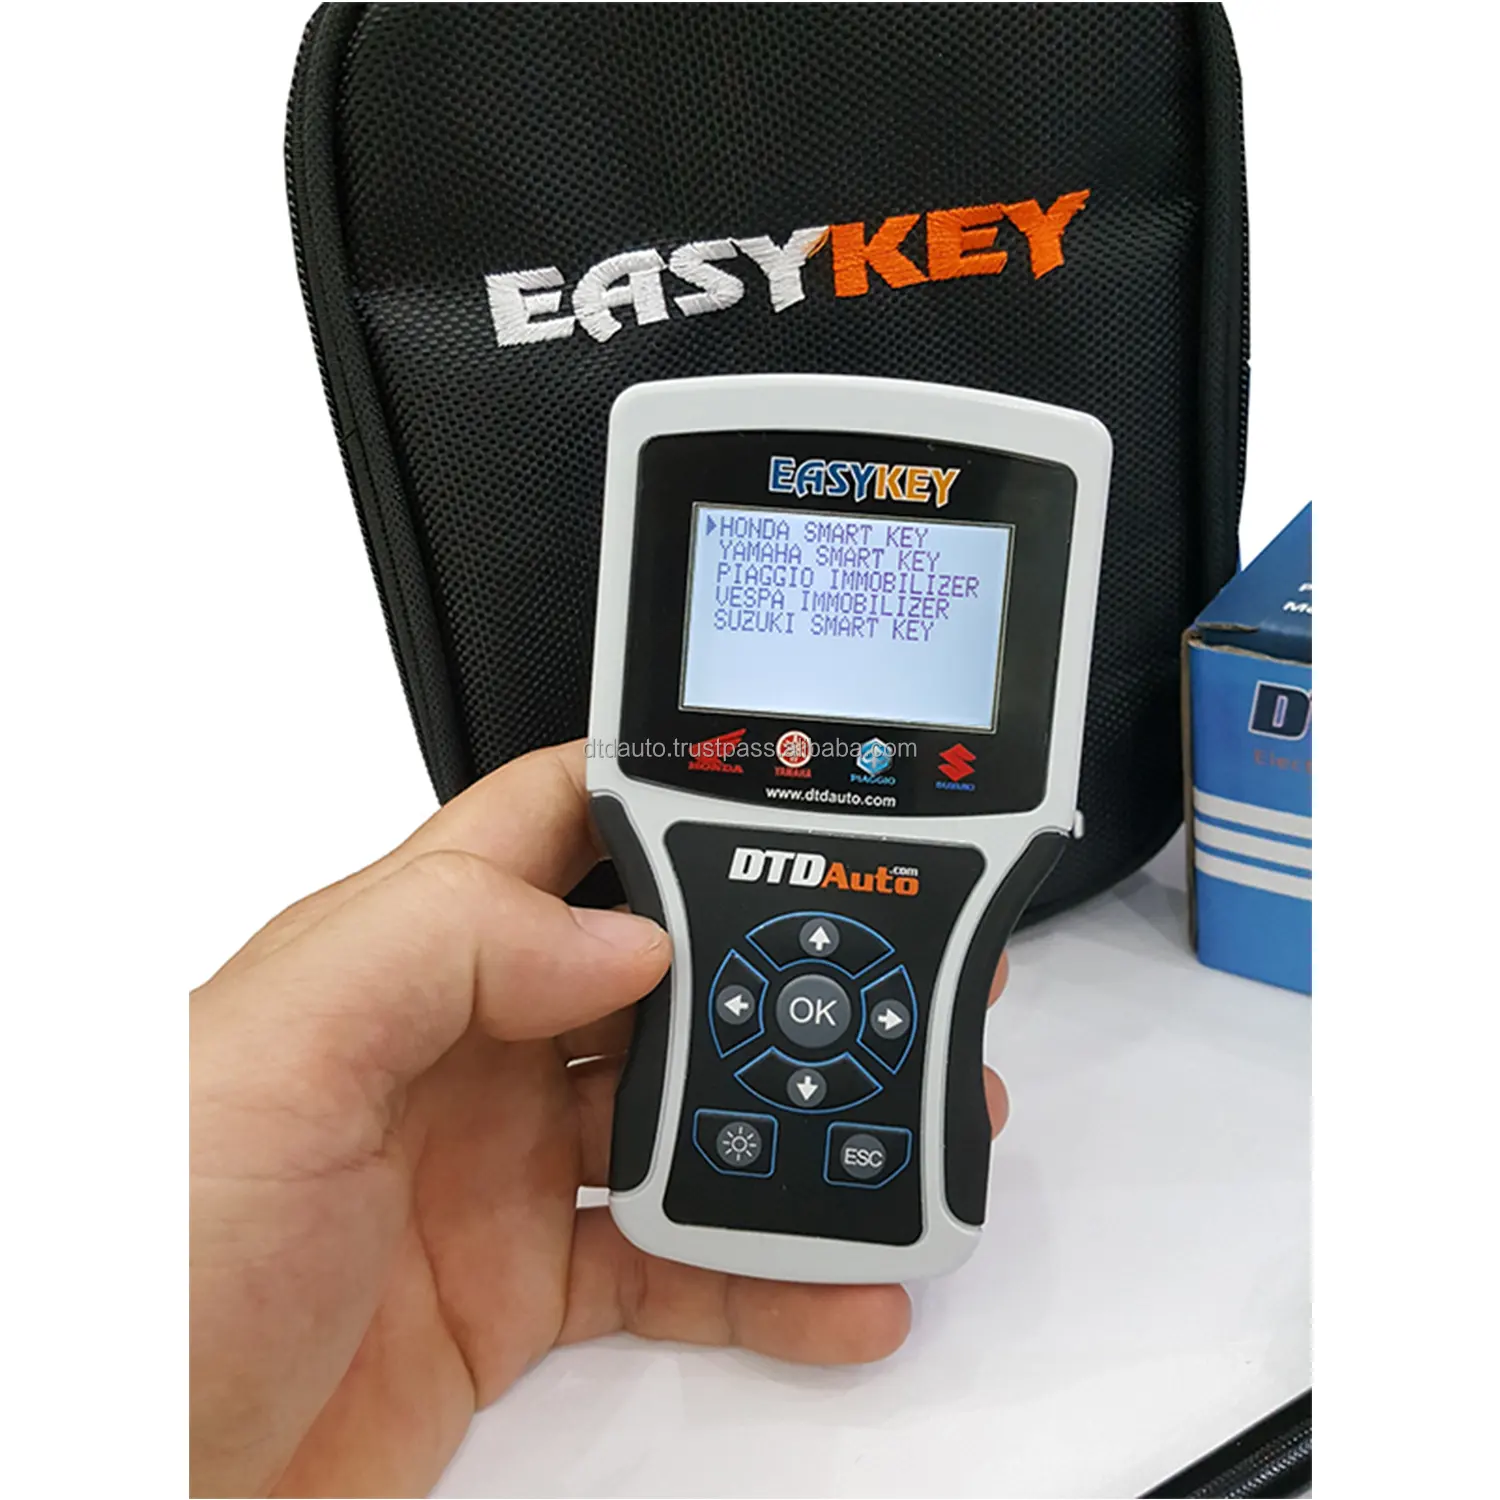 Easykey ferramenta de diagnóstico automotivo, ferramenta original do vietnã, programador de chave inteligente